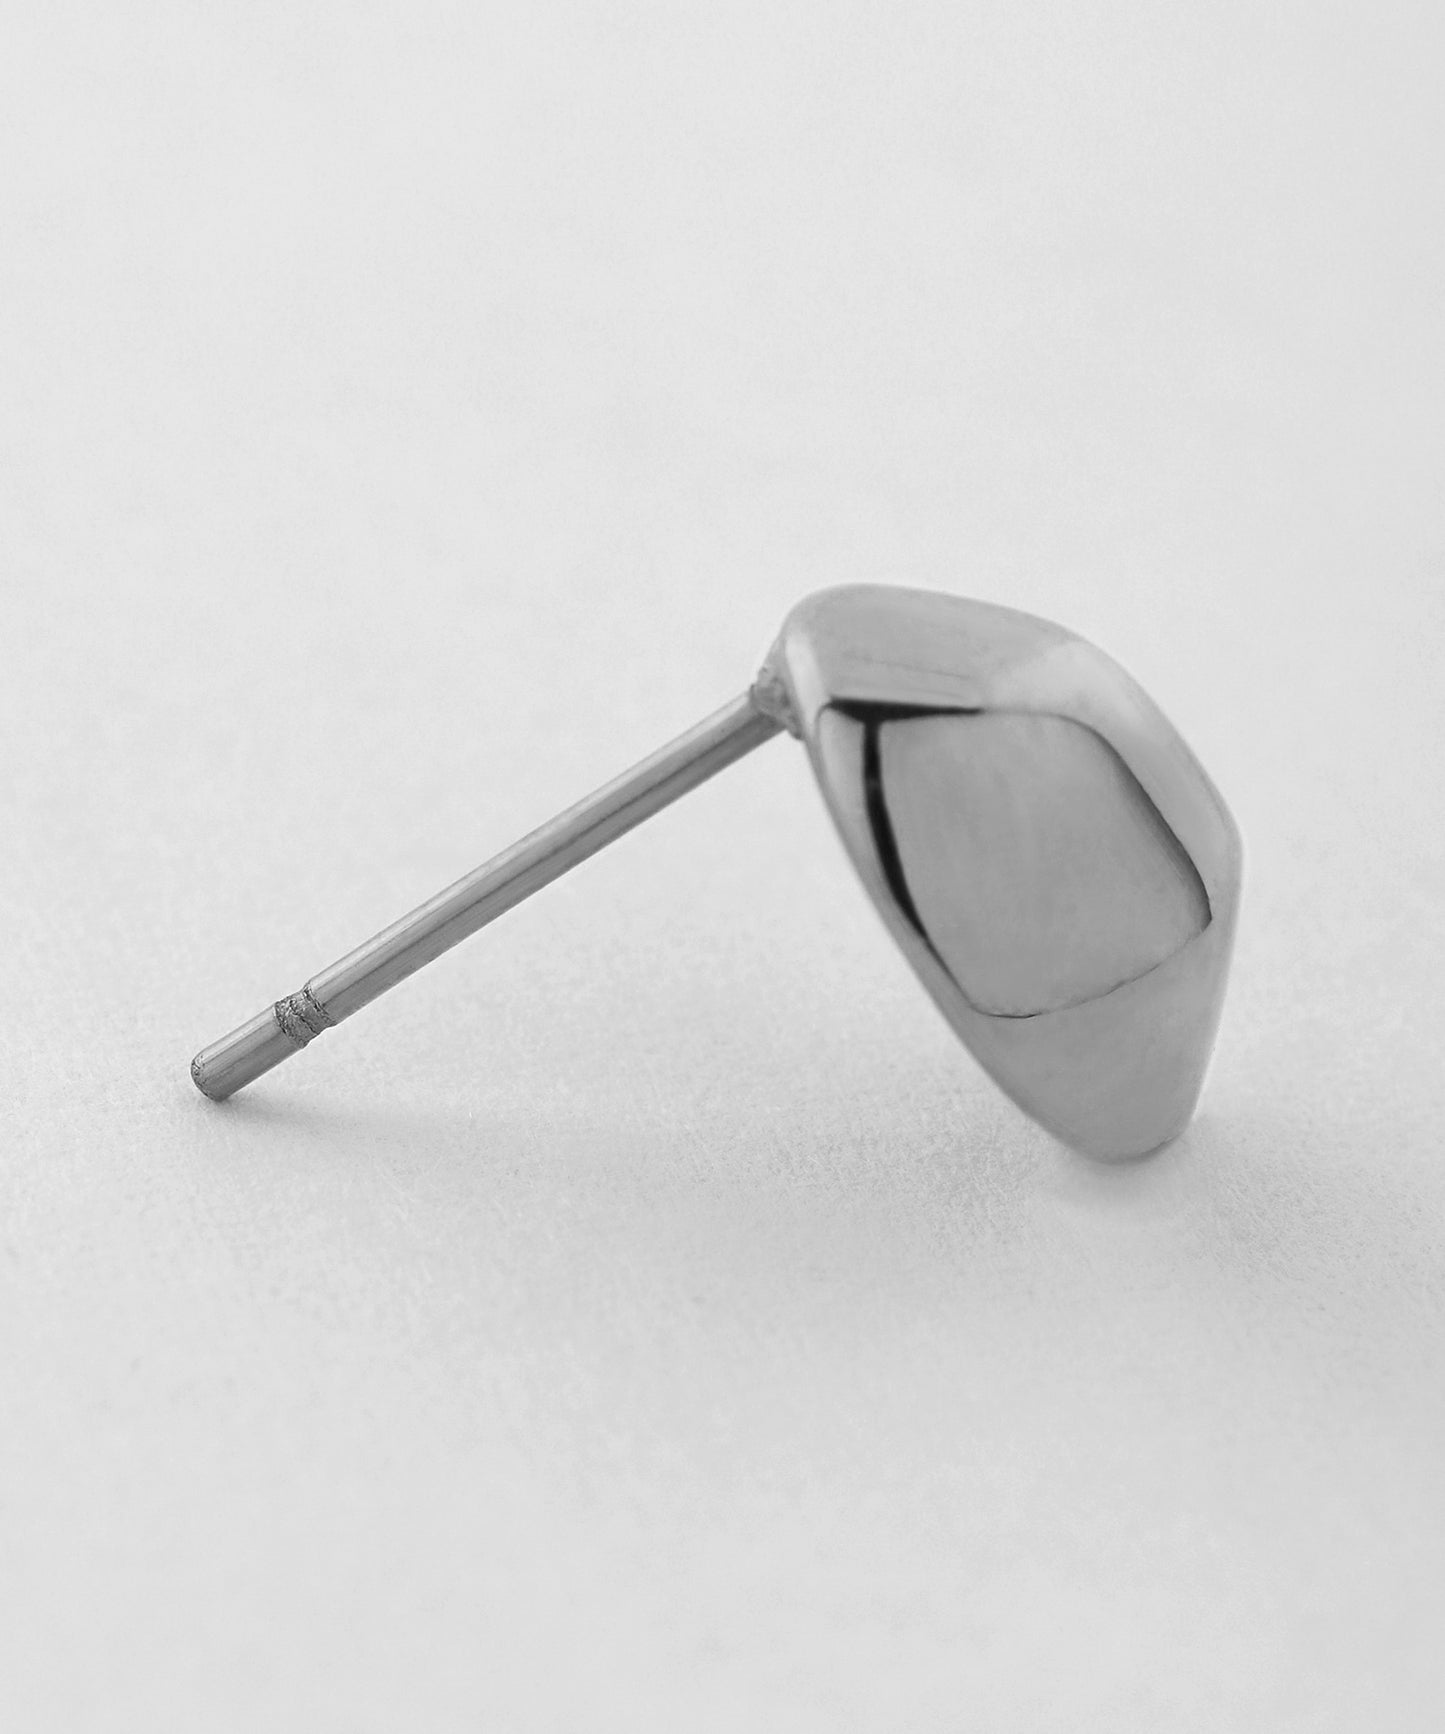 【Stainless Steel IP】 Metal Design Earrings